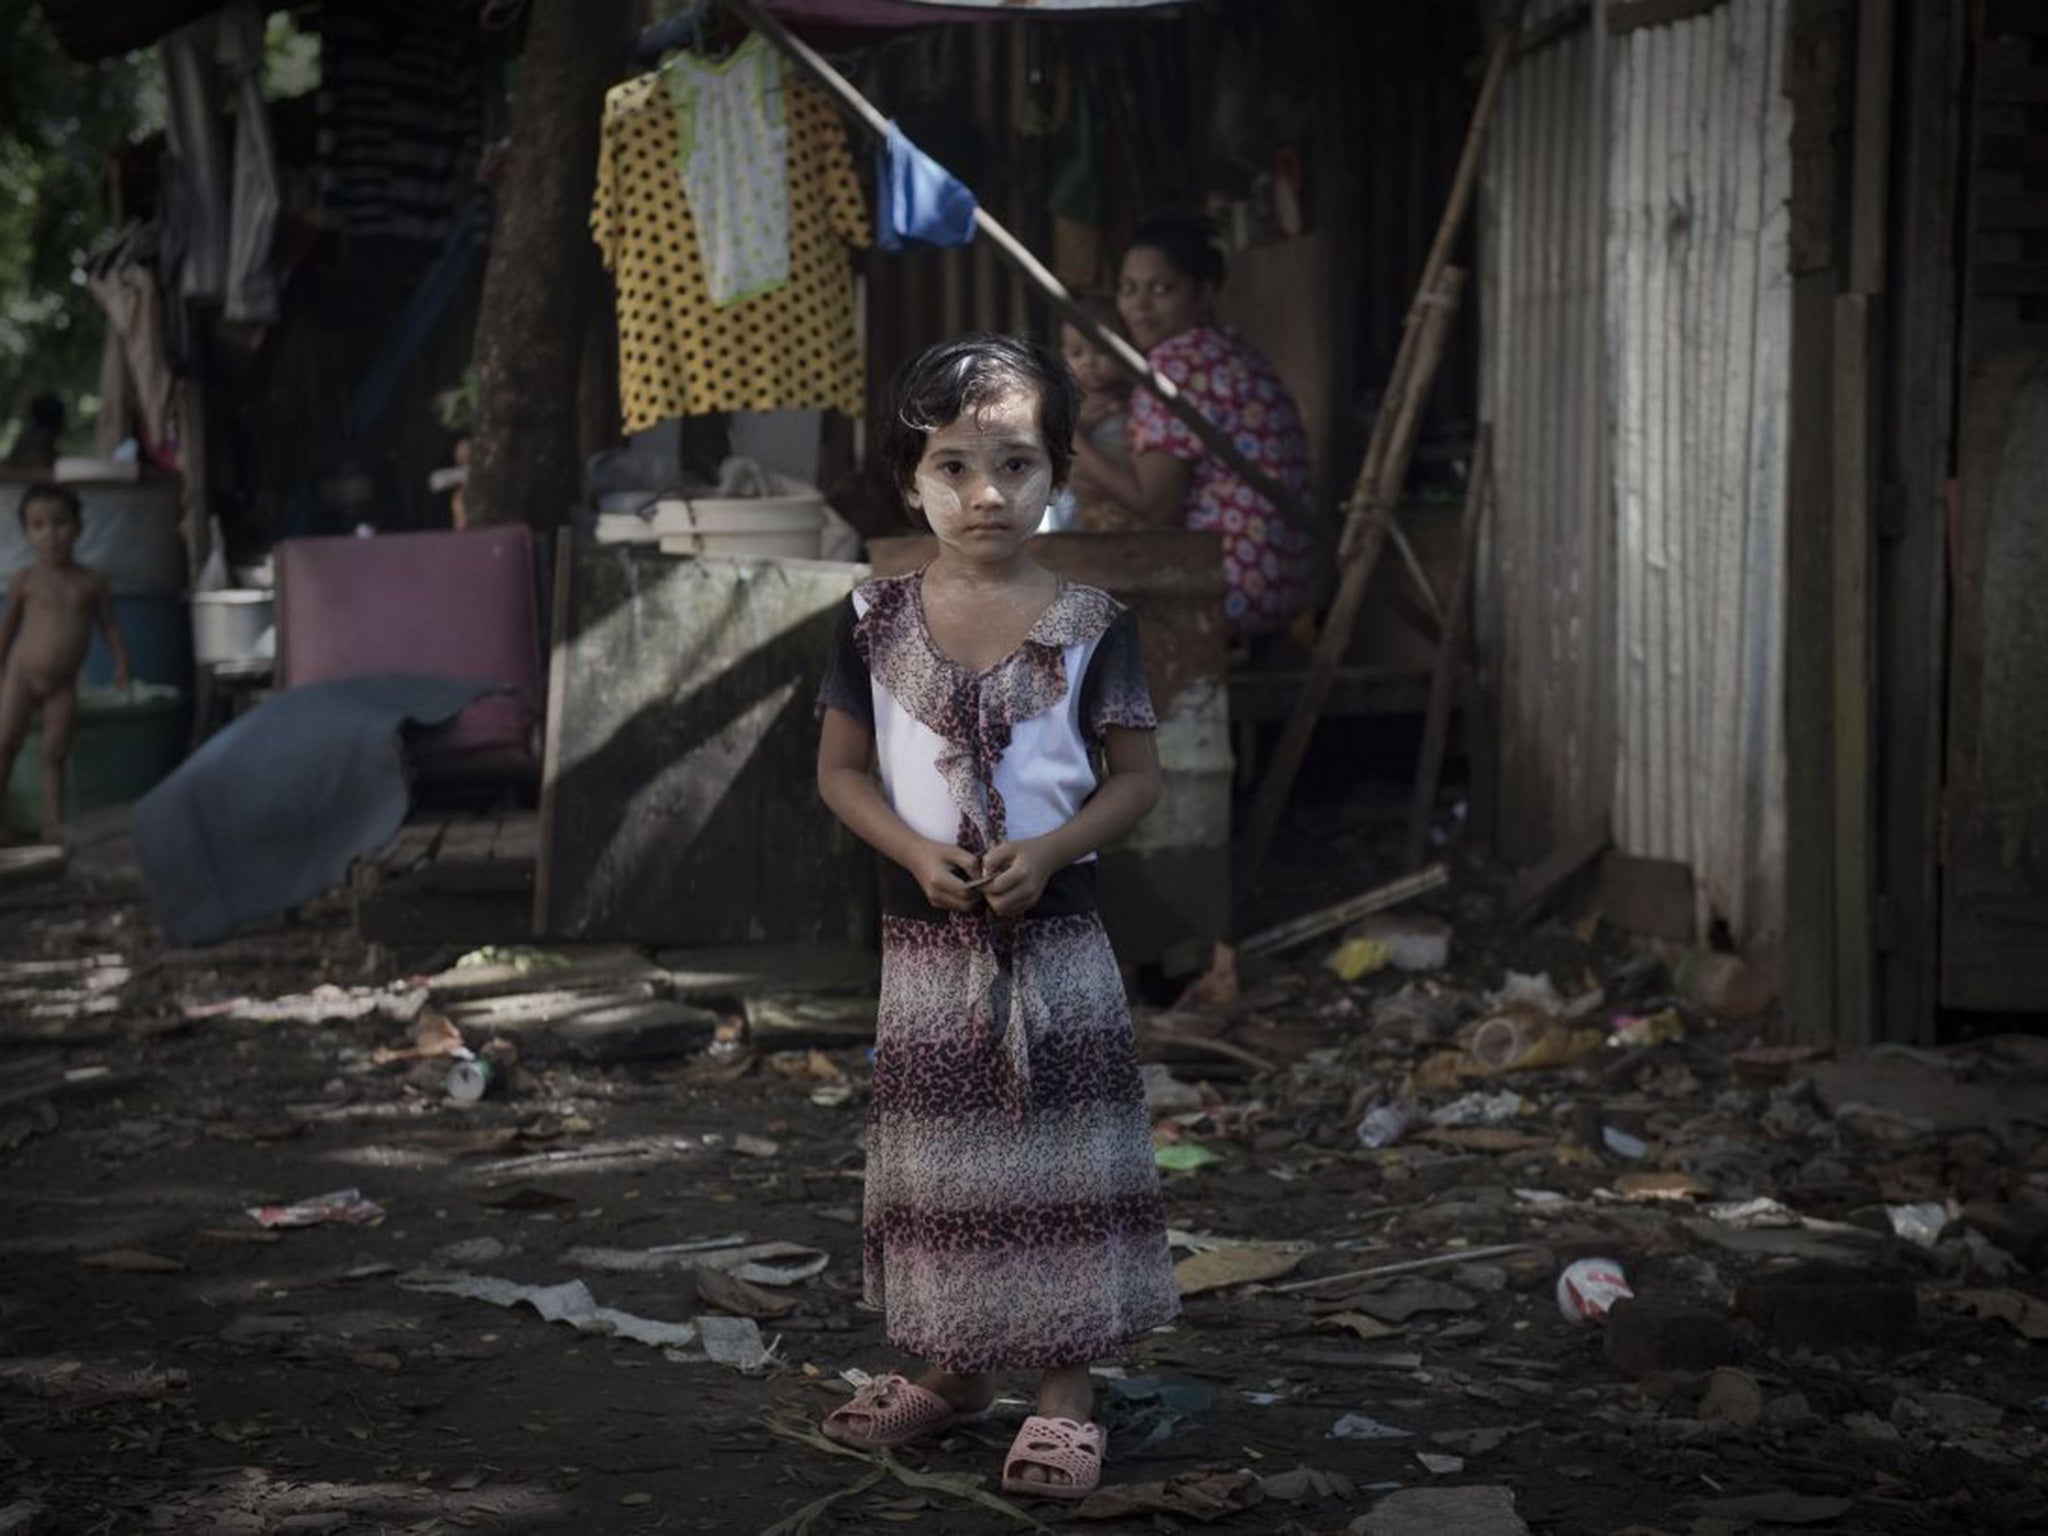 A Burmese girl looks on in a slum in Rangoon on 6 November